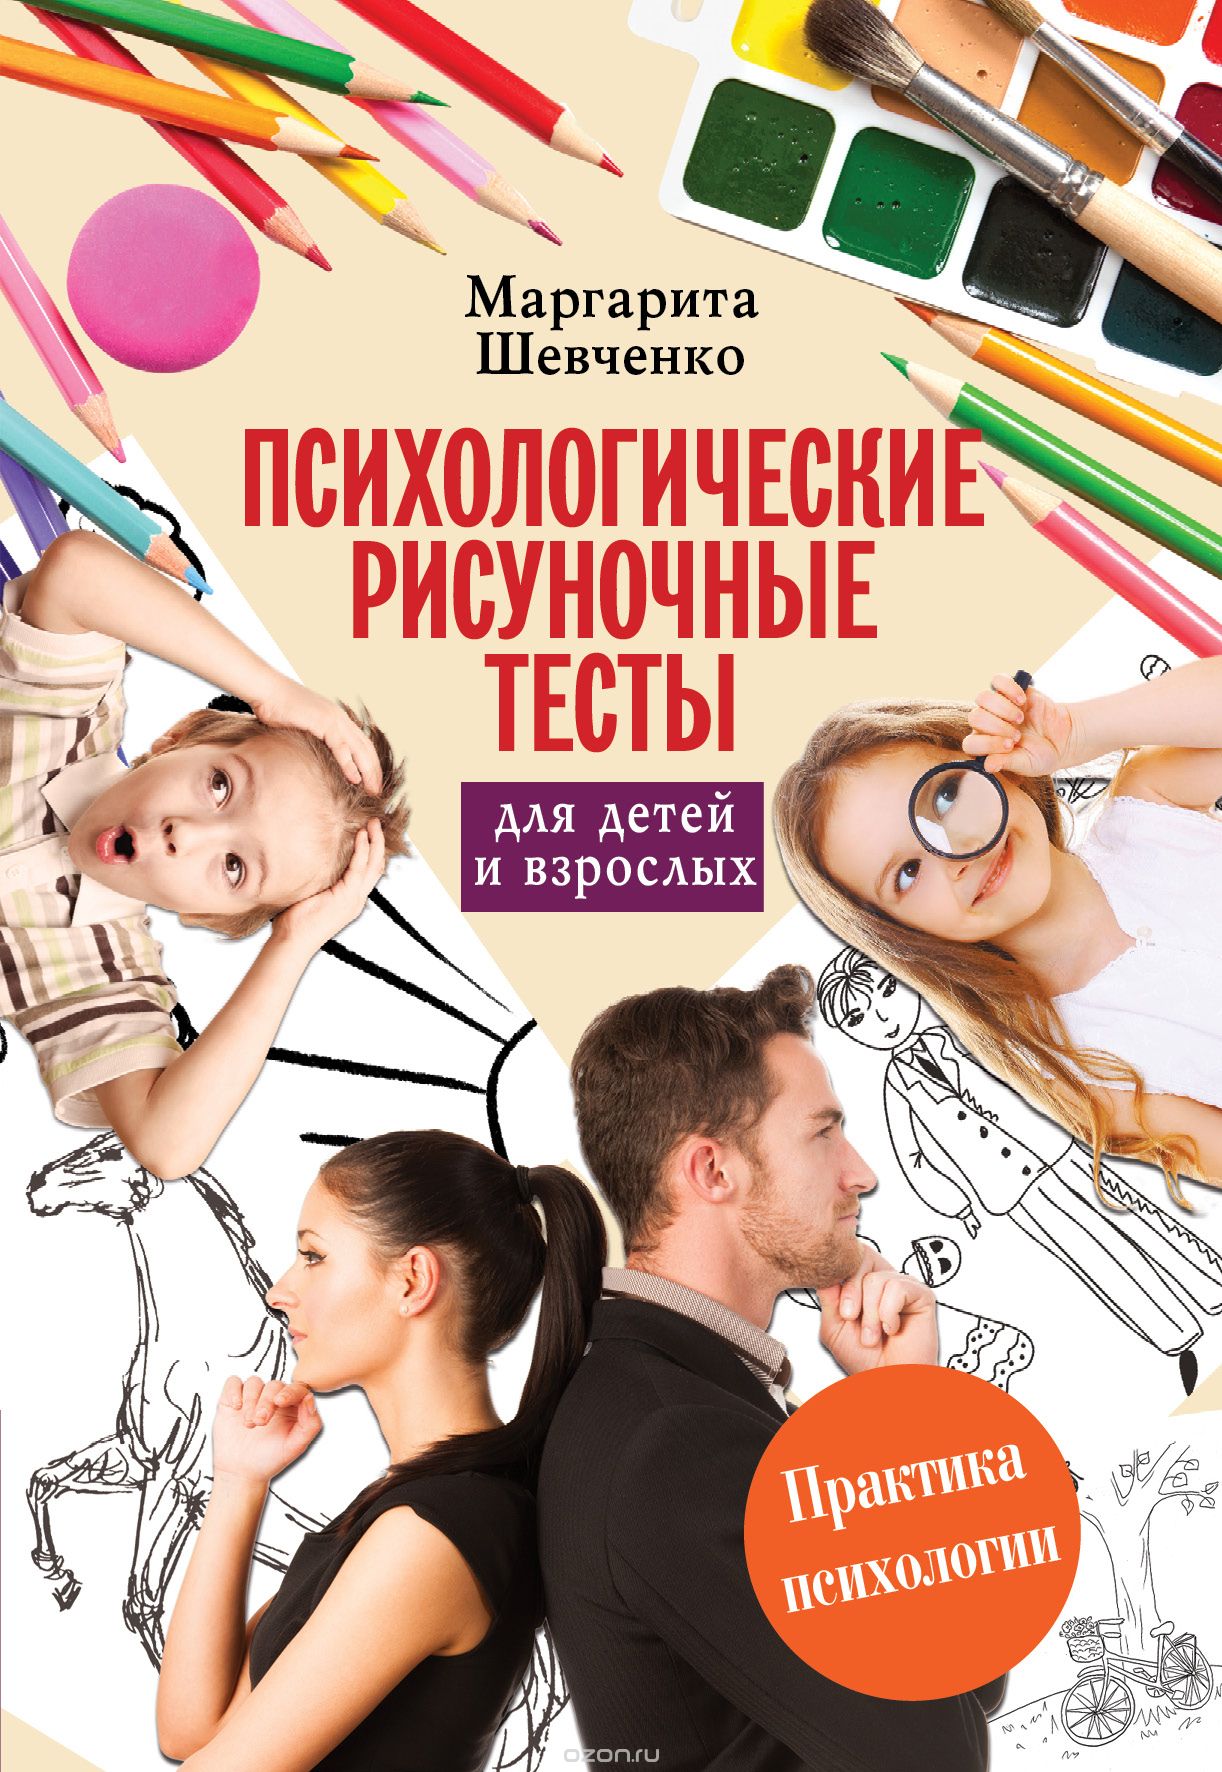 Психологические рисуночные тесты для детей и взрослых, Шевченко Маргарита